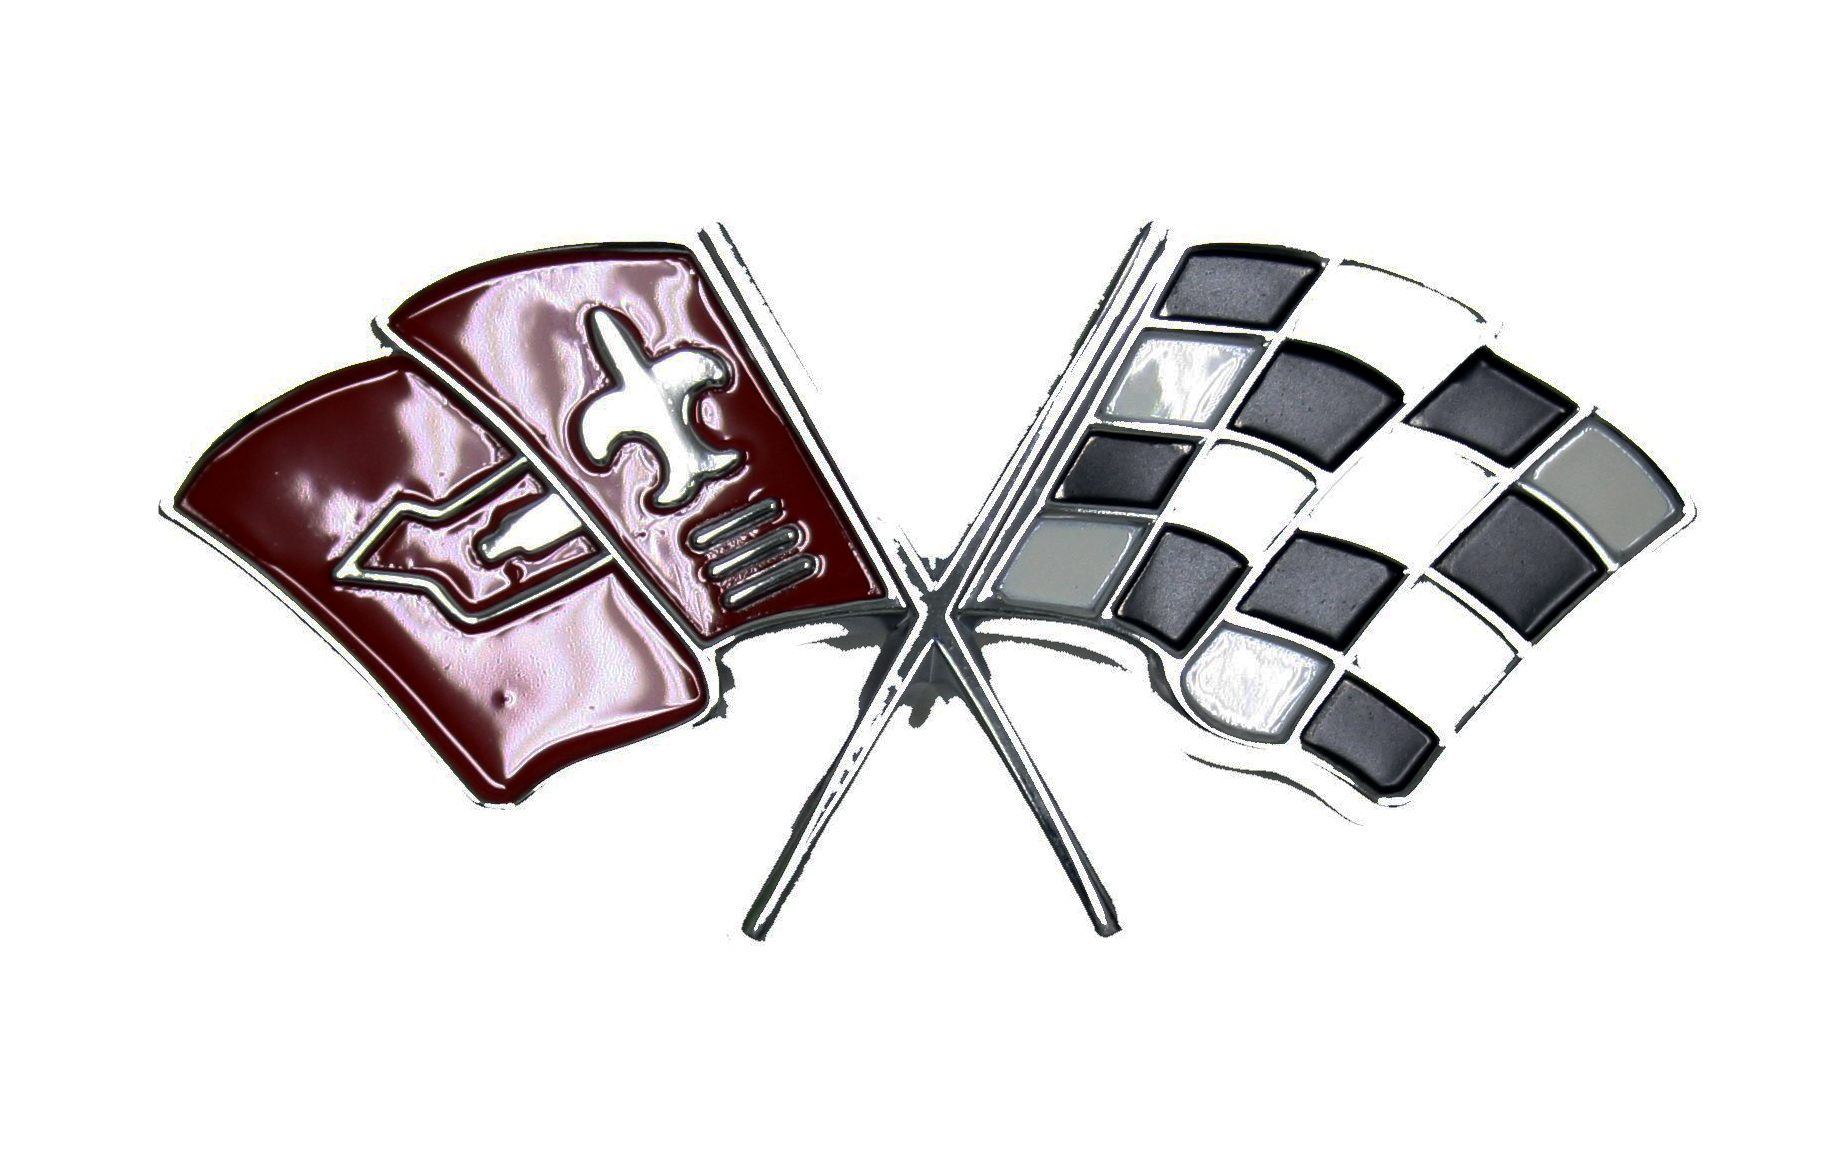 Corvette Fuel Injection Plenum Cover Emblem - Flag